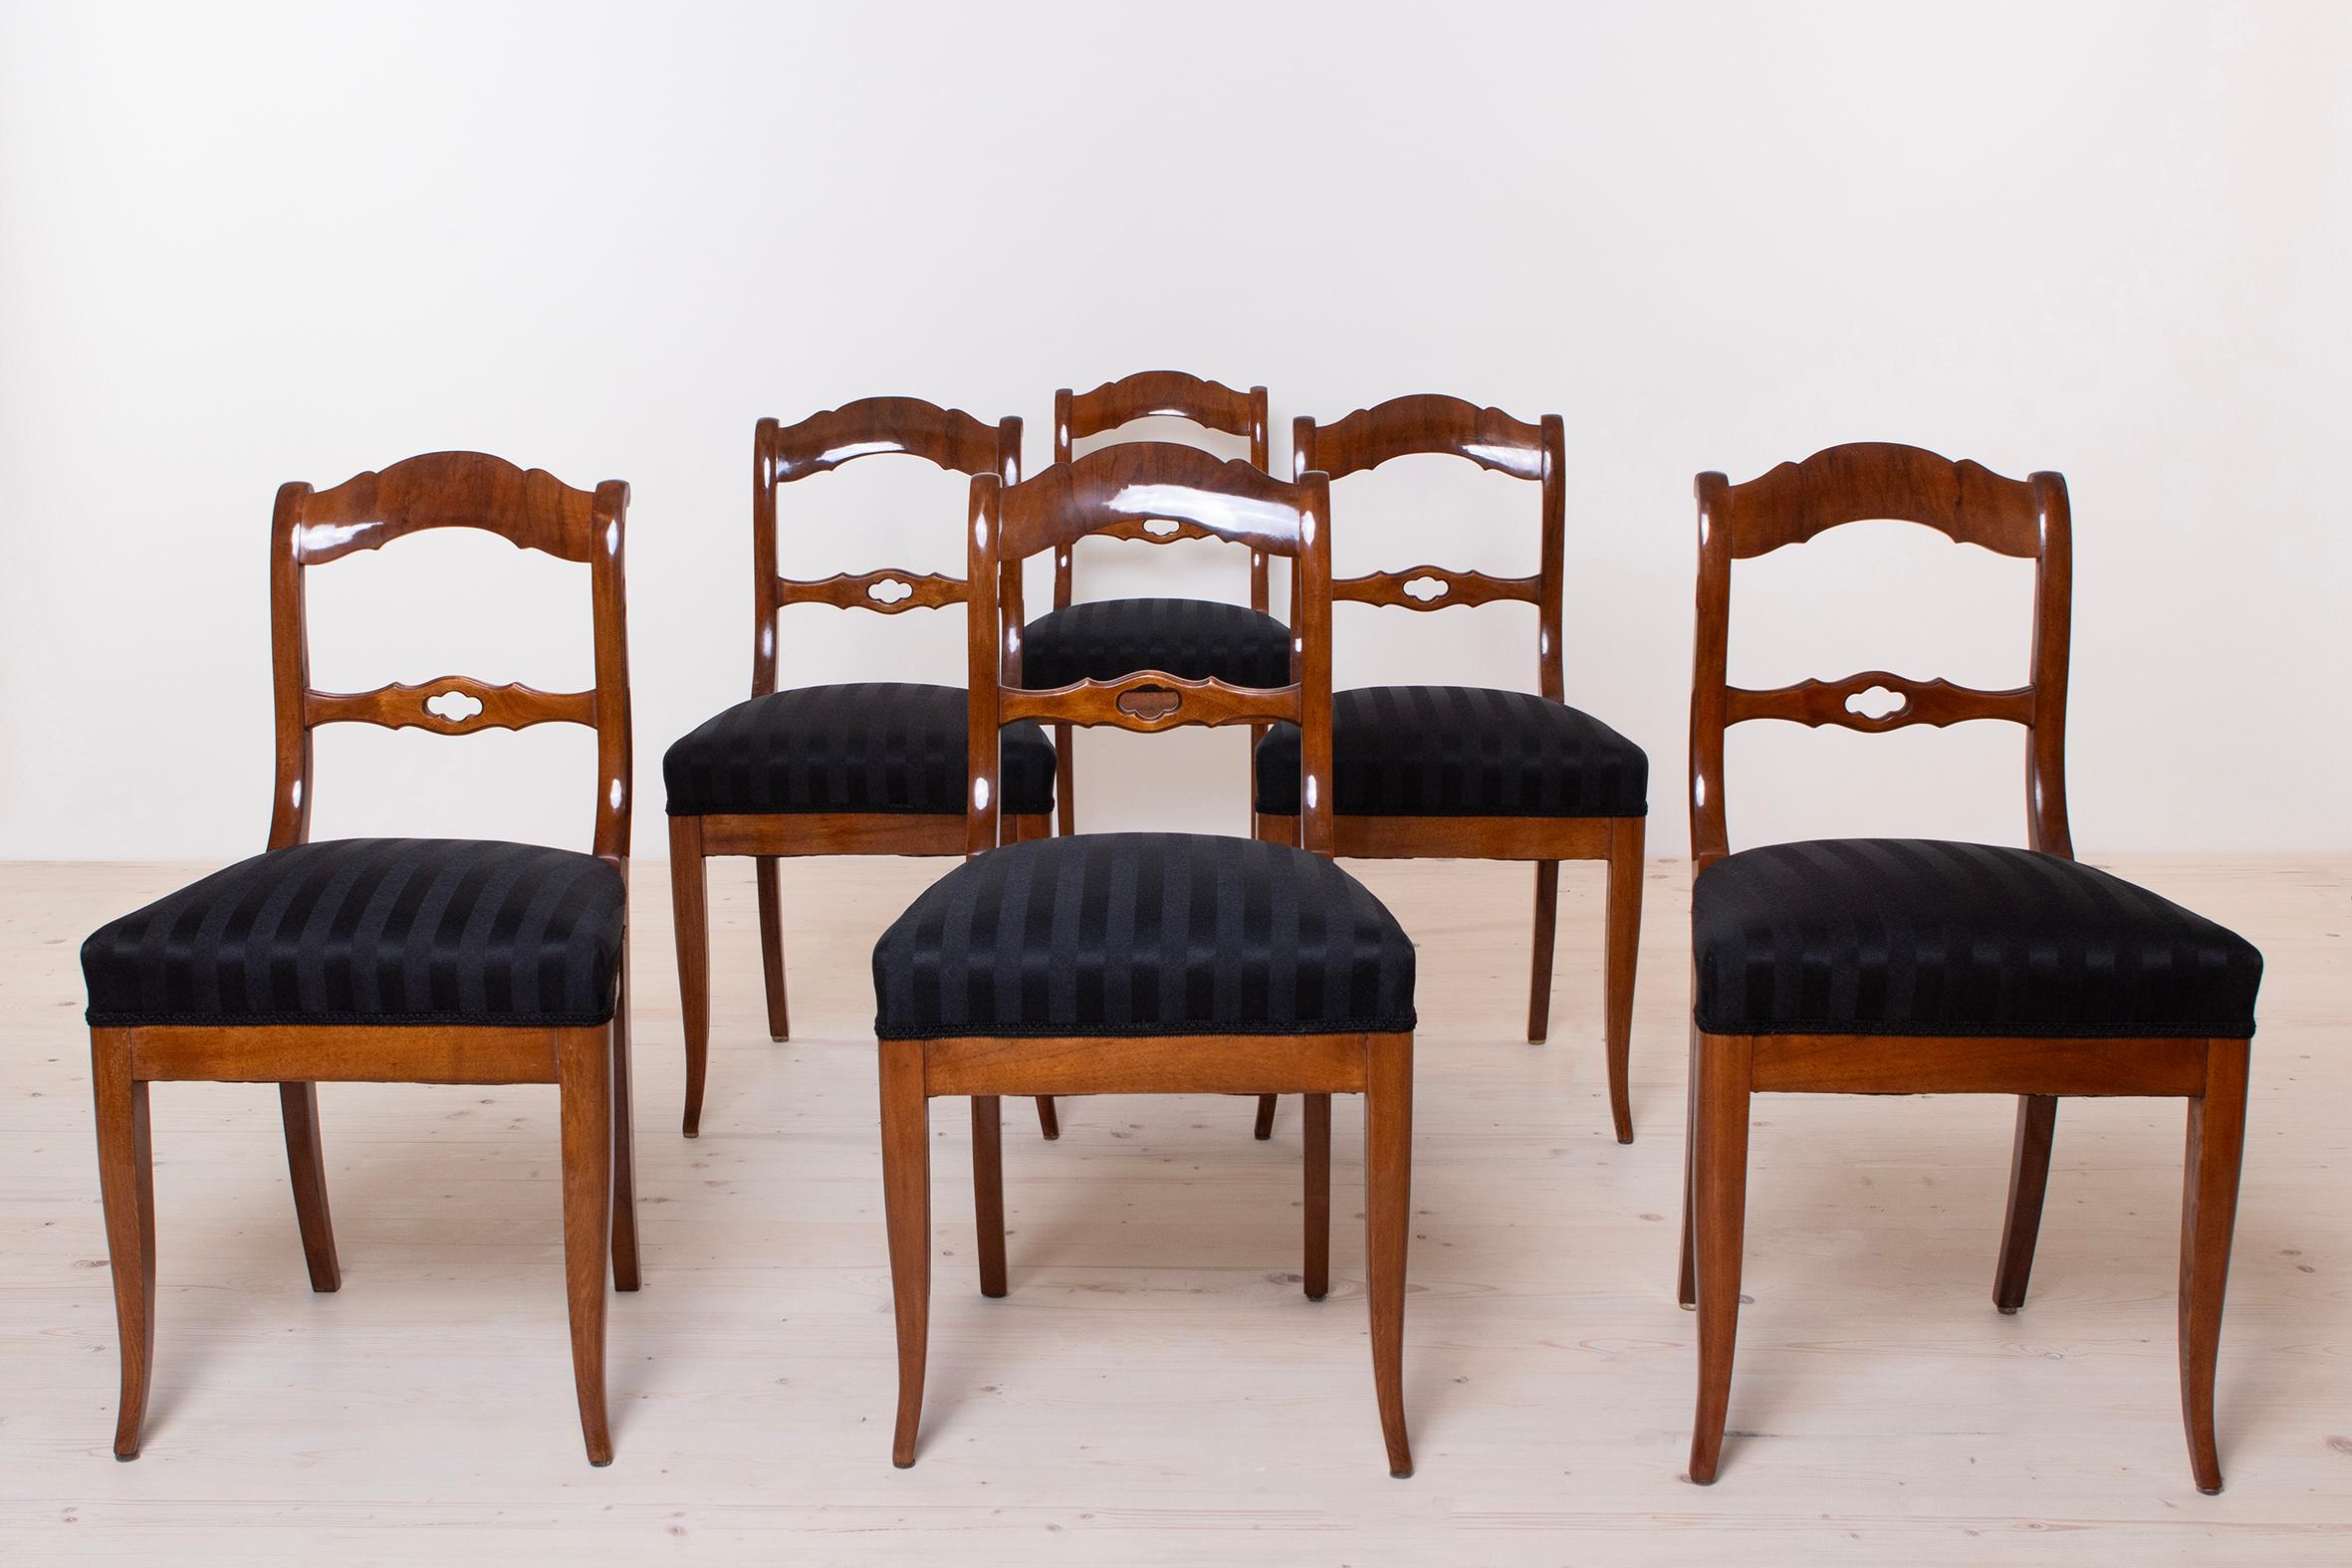 Ensemble de six chaises confortables et originales de style Biedermeier fabriquées en Allemagne, vers 1820-1840. Les chaises sont en noyer, partiellement plaqué sur l'assise et le dossier. L'ensemble est entièrement restauré. La tapisserie a été